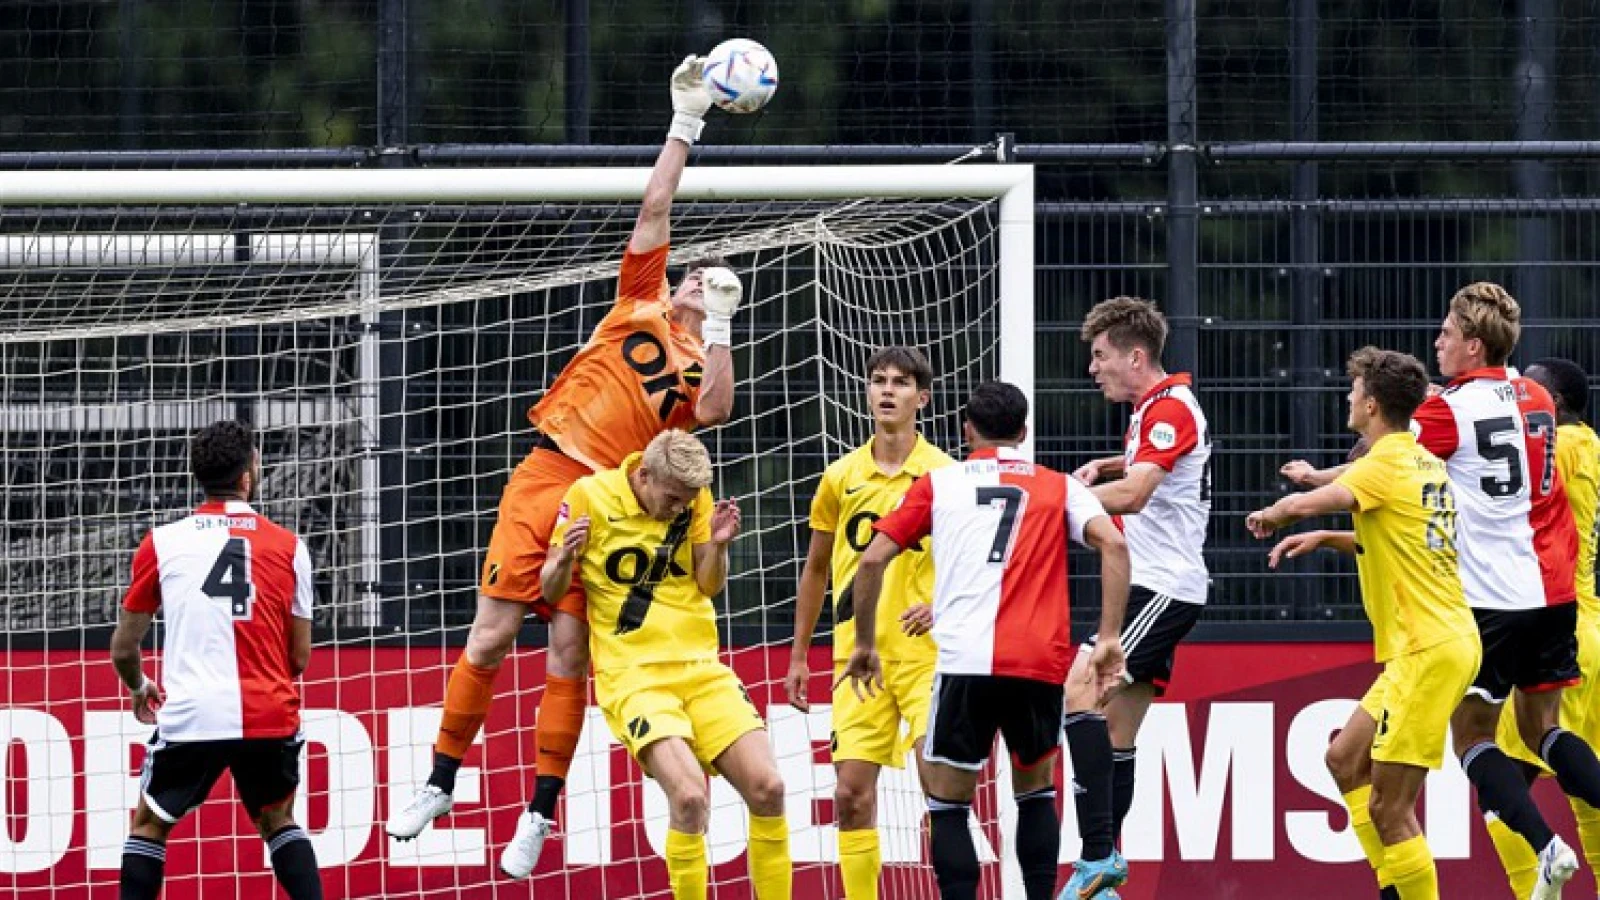 SAMENVATTING | Feyenoord - NAC Breda 6-1